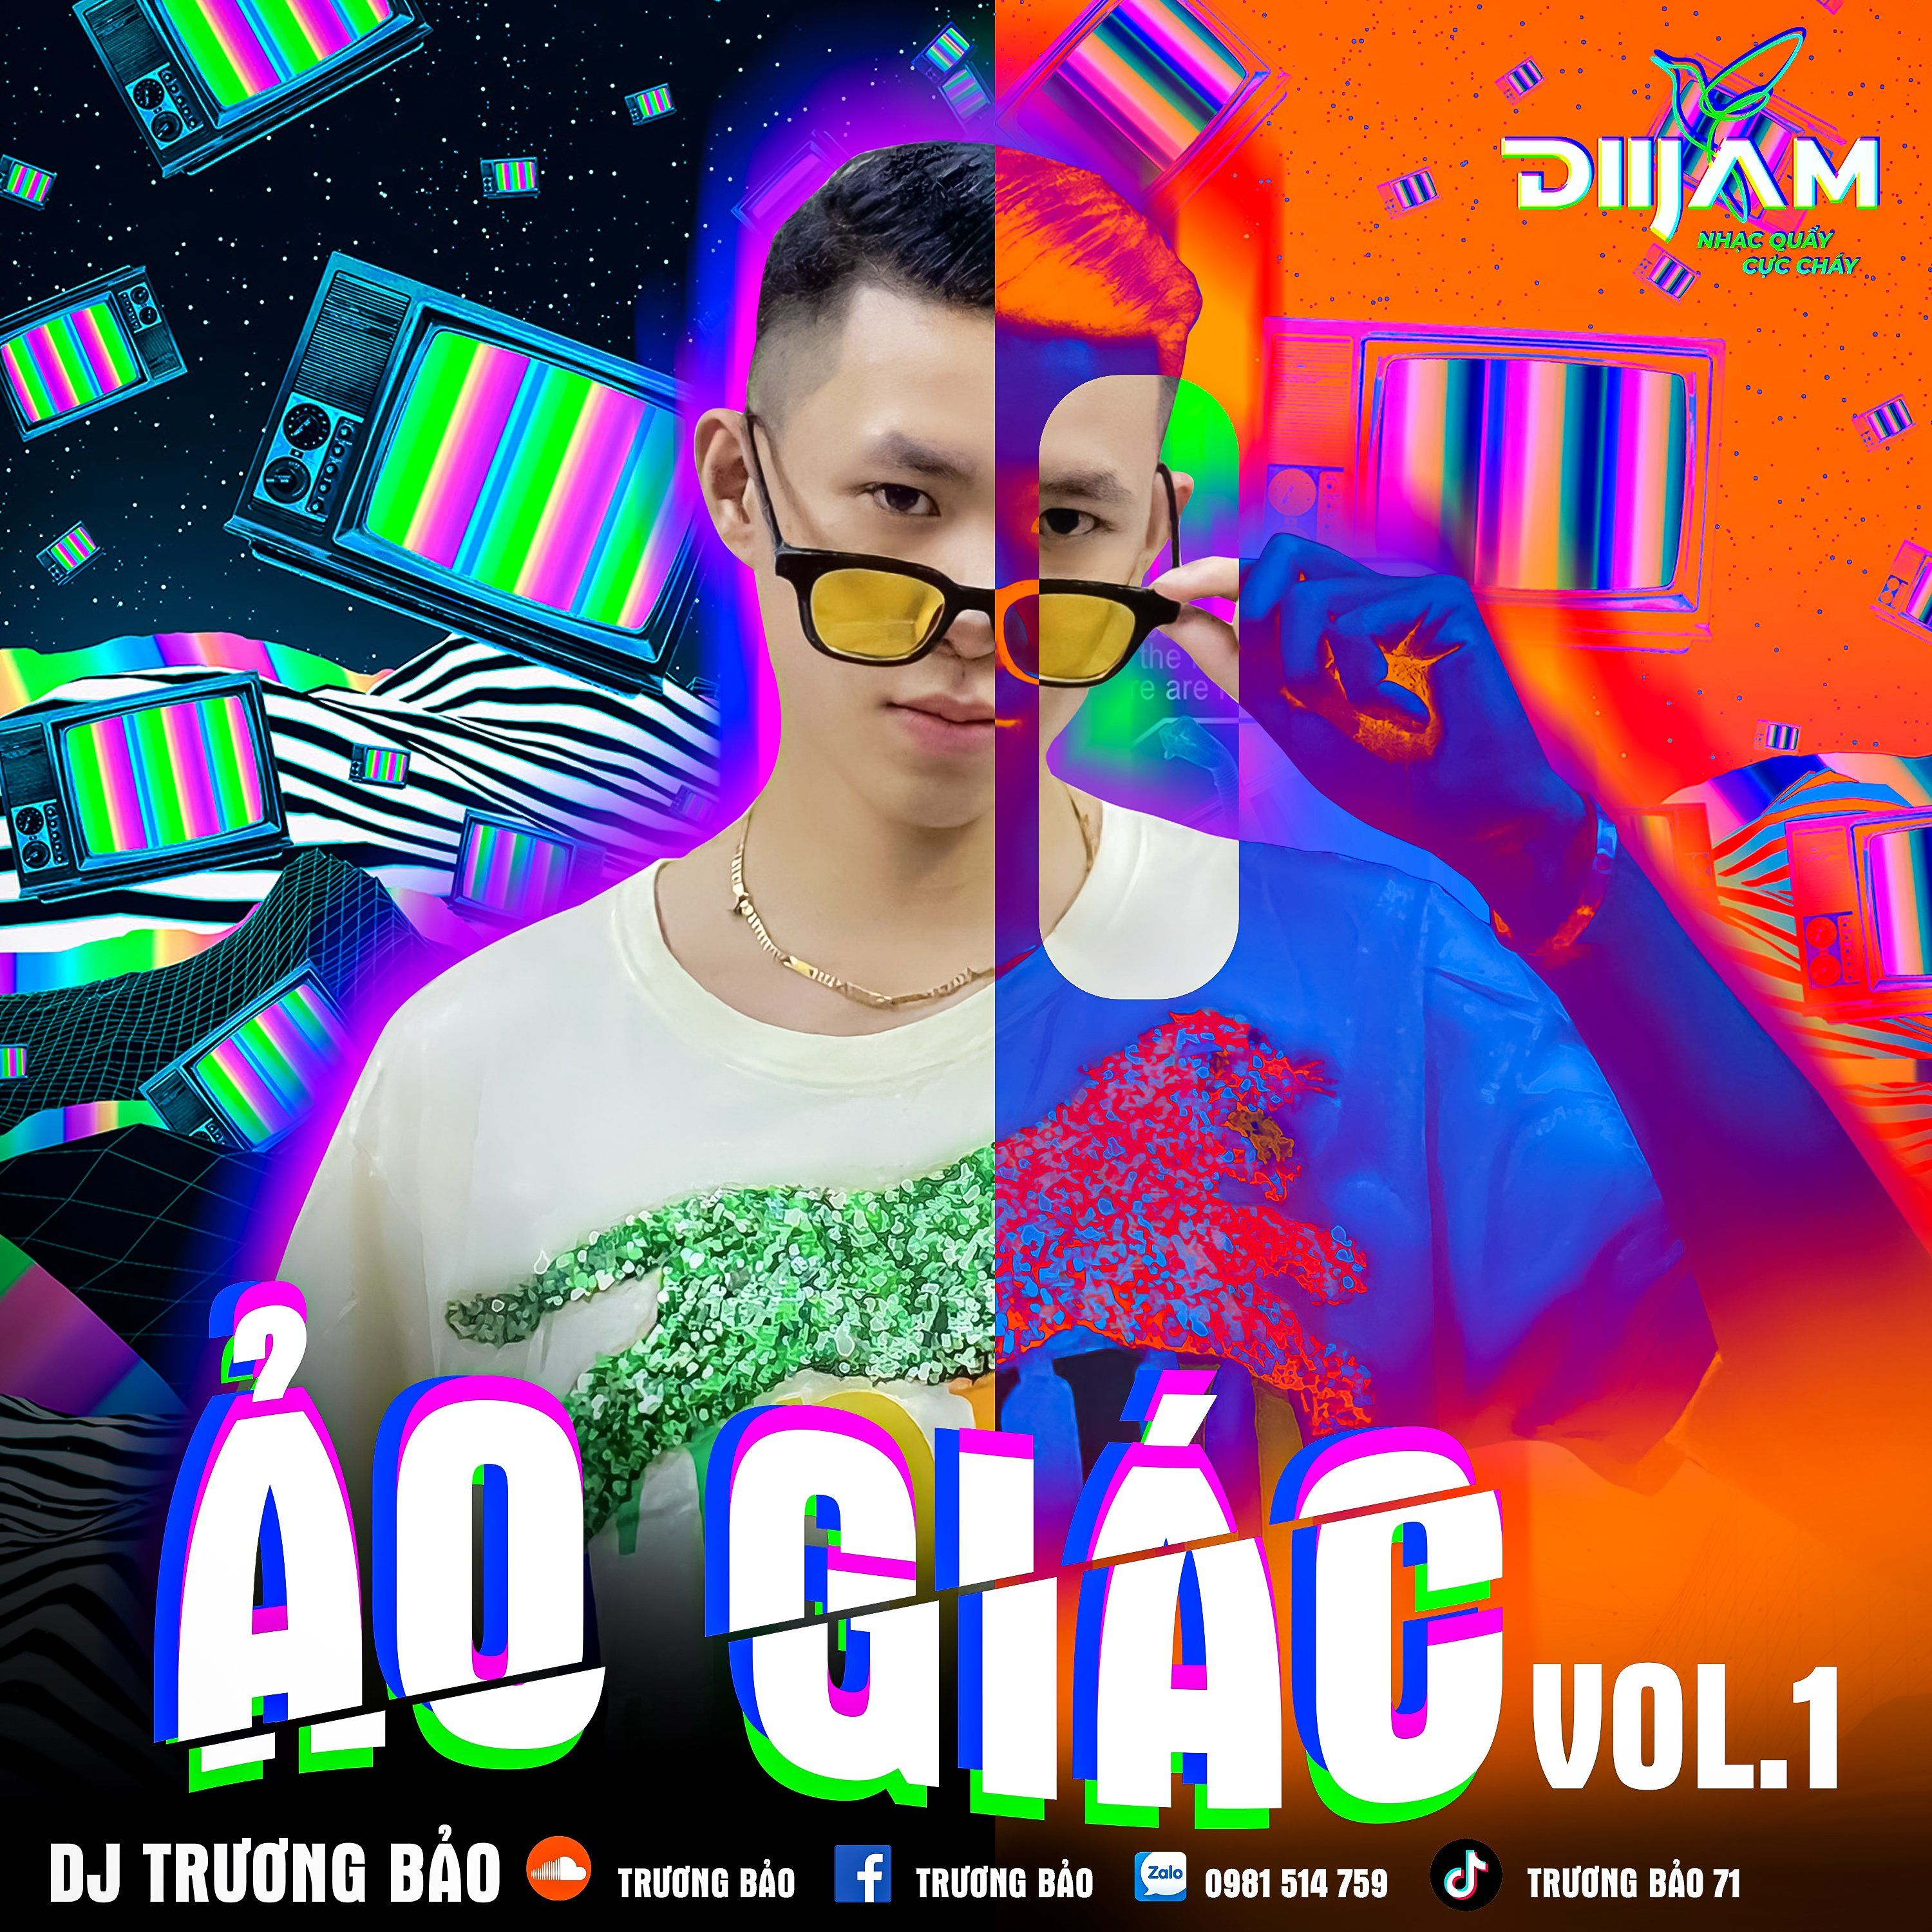 ဒေါင်းလုပ် Ảo Giác Vol 1 - DJ Trương Bảo (Nonstop Diijam)